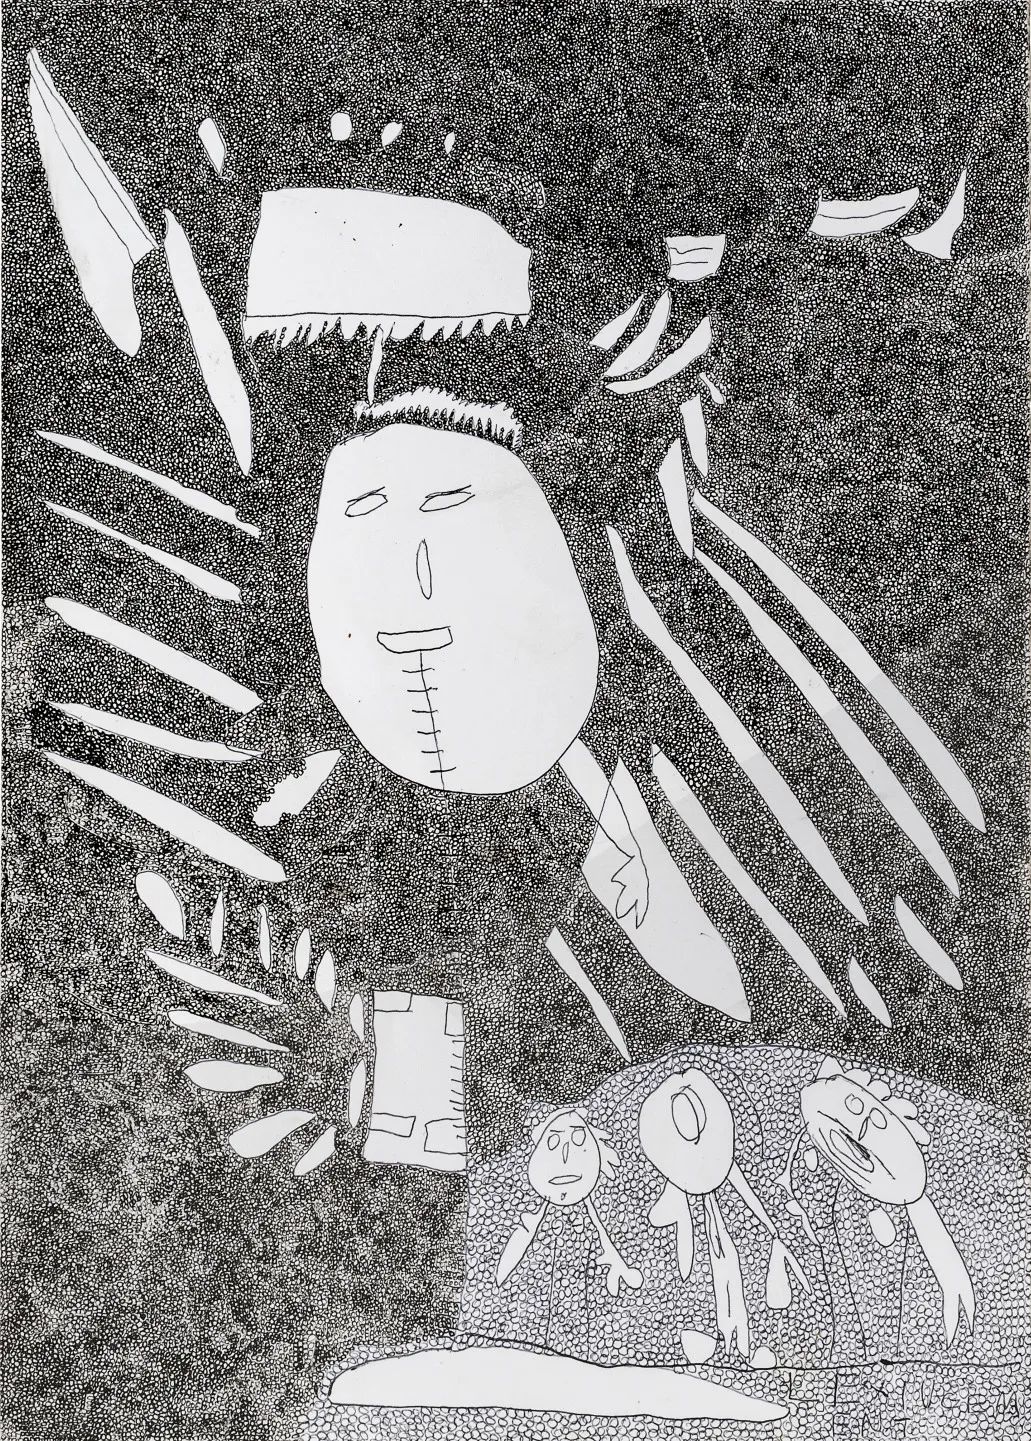 玛丽亚·拉帕斯托拉，《无题》，2019，纸上细水彩笔，30 x 21 cm。艺术家供图。